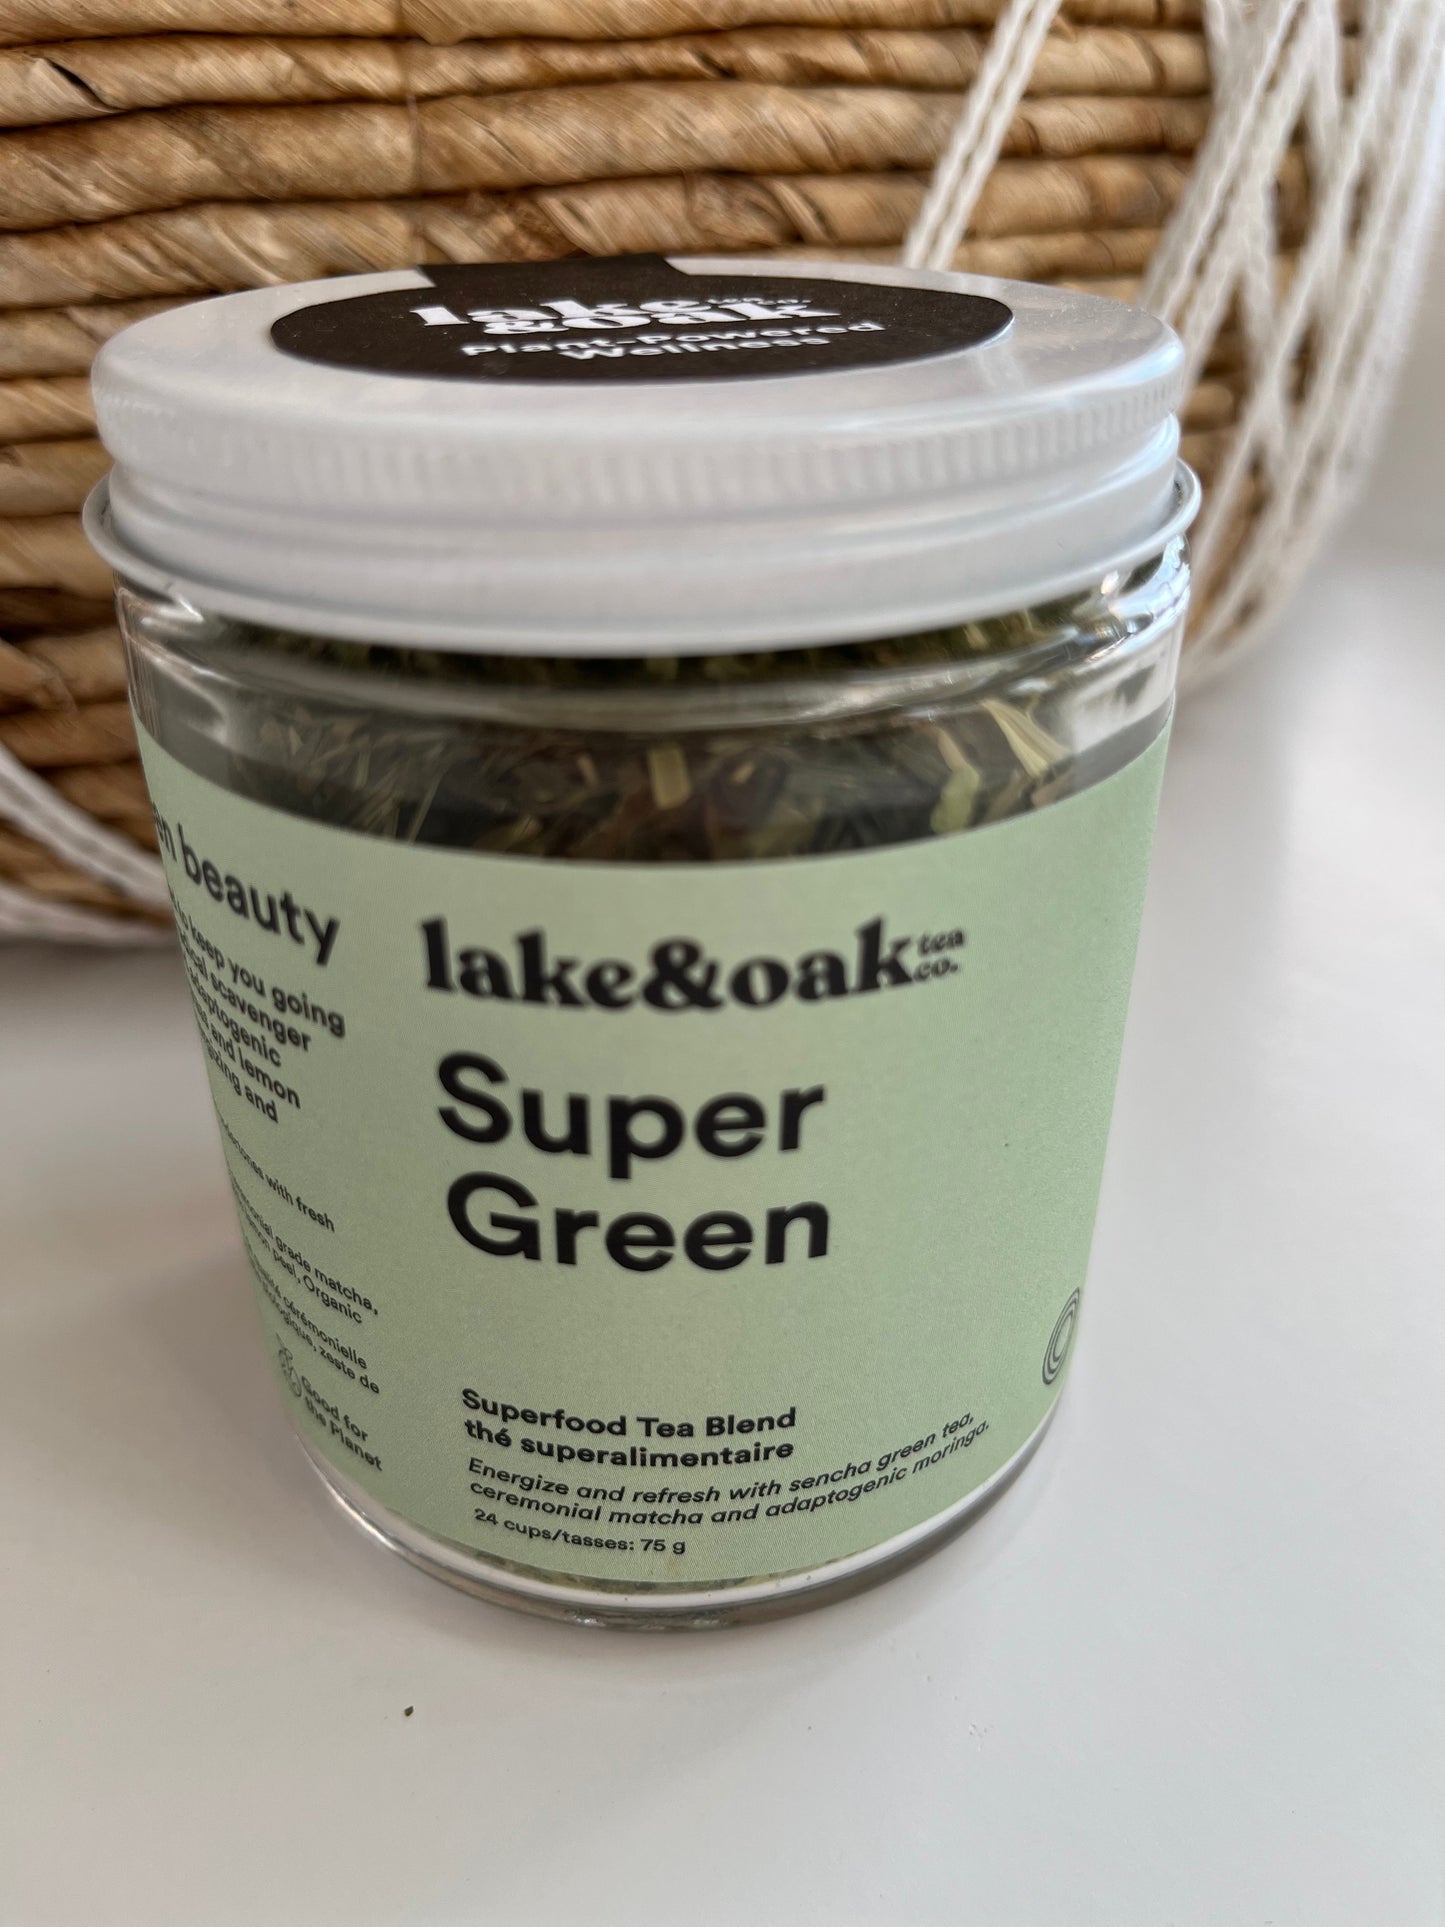 Superberry Immunity Superfood Tea Blend